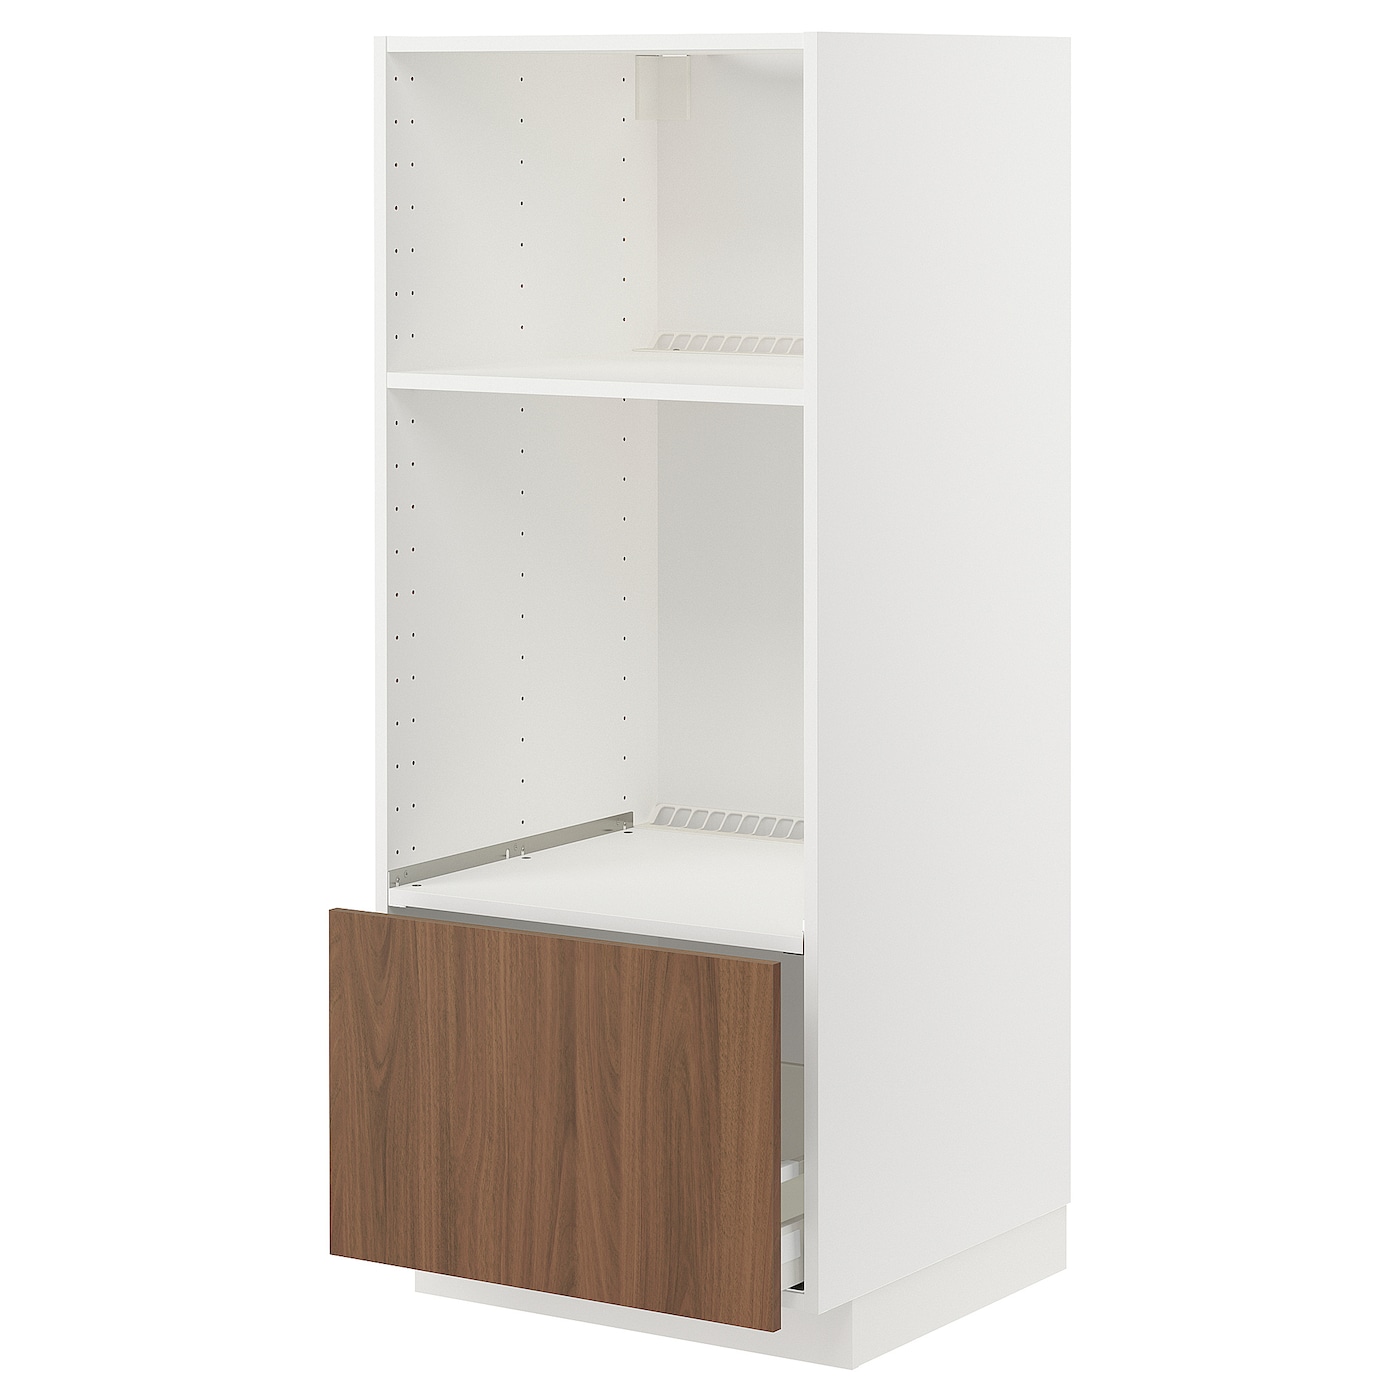 Навесной шкаф - METOD / MAXIMERA IKEA/ МЕТОД/ МАКСИМЕРА ИКЕА,  60х60х140 см, белый/ коричневый